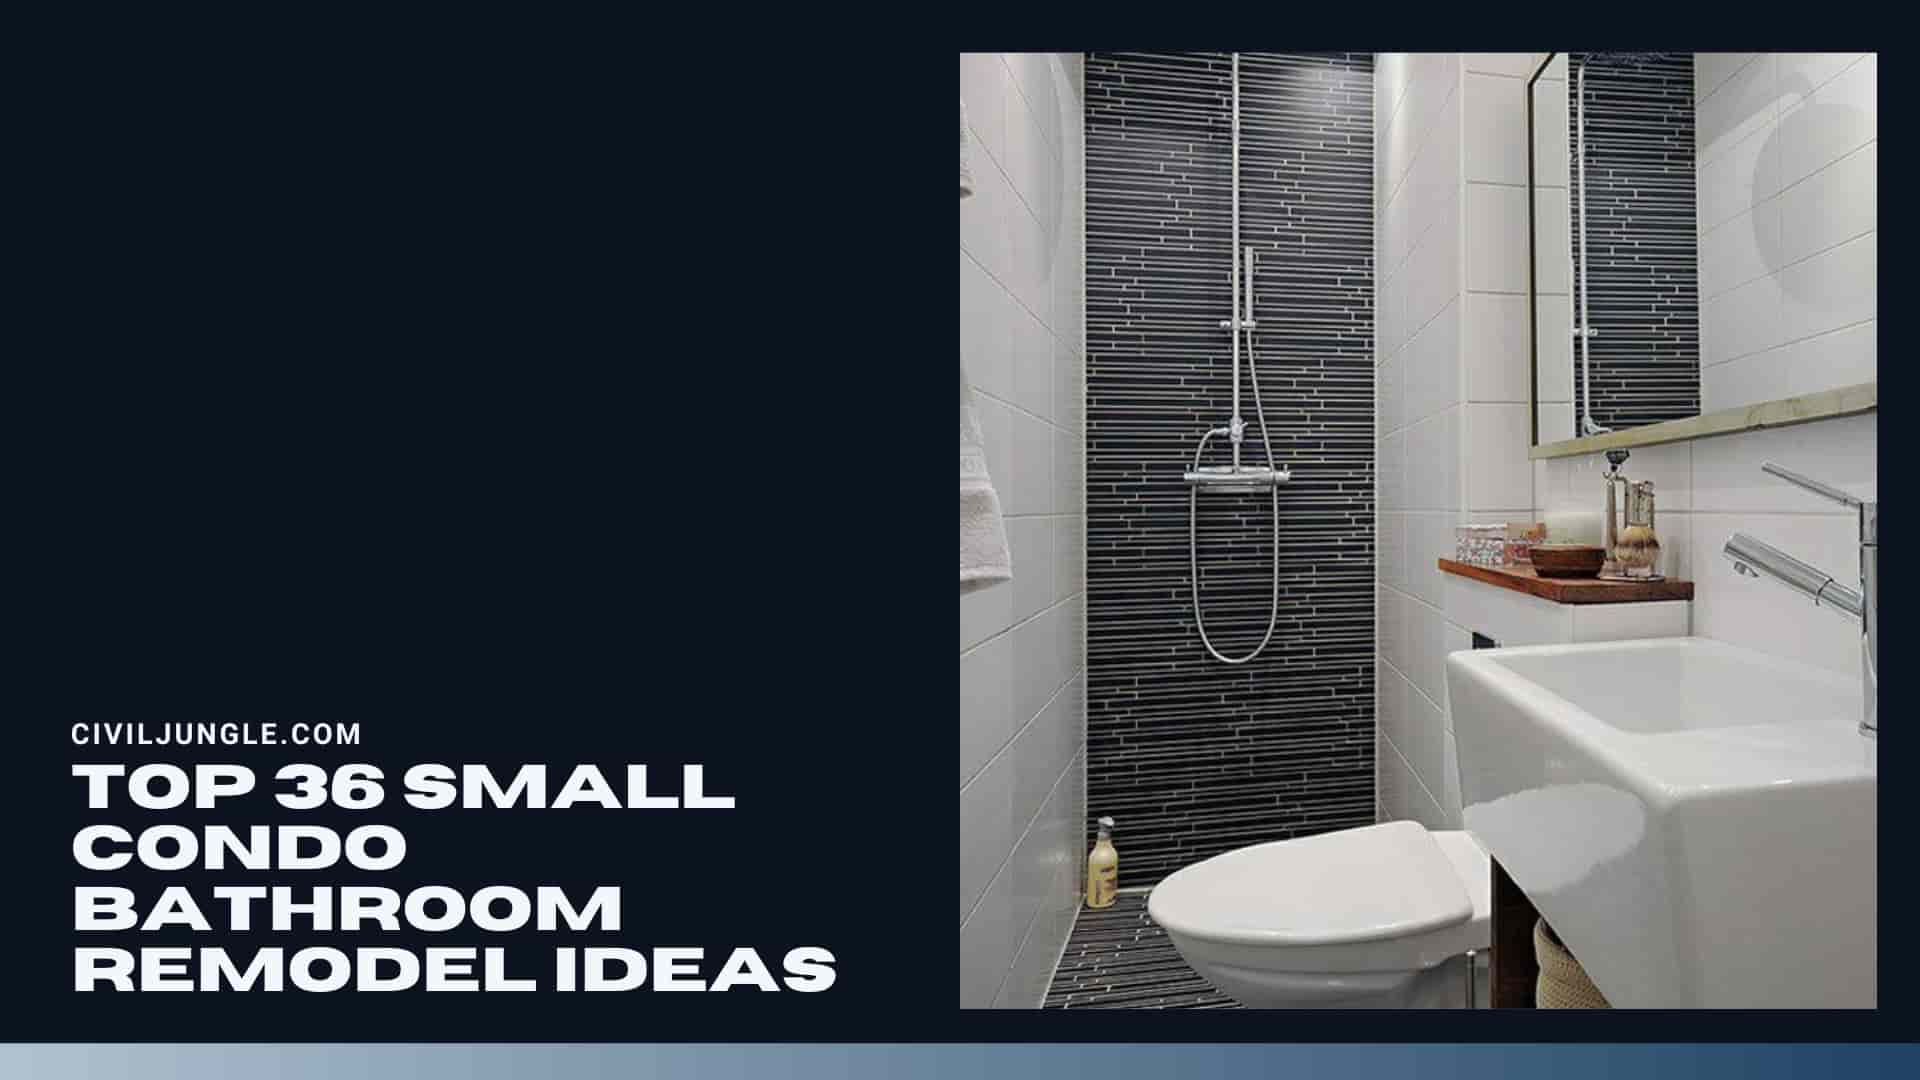 Top 36 Small Condo Bathroom Remodel Ideas